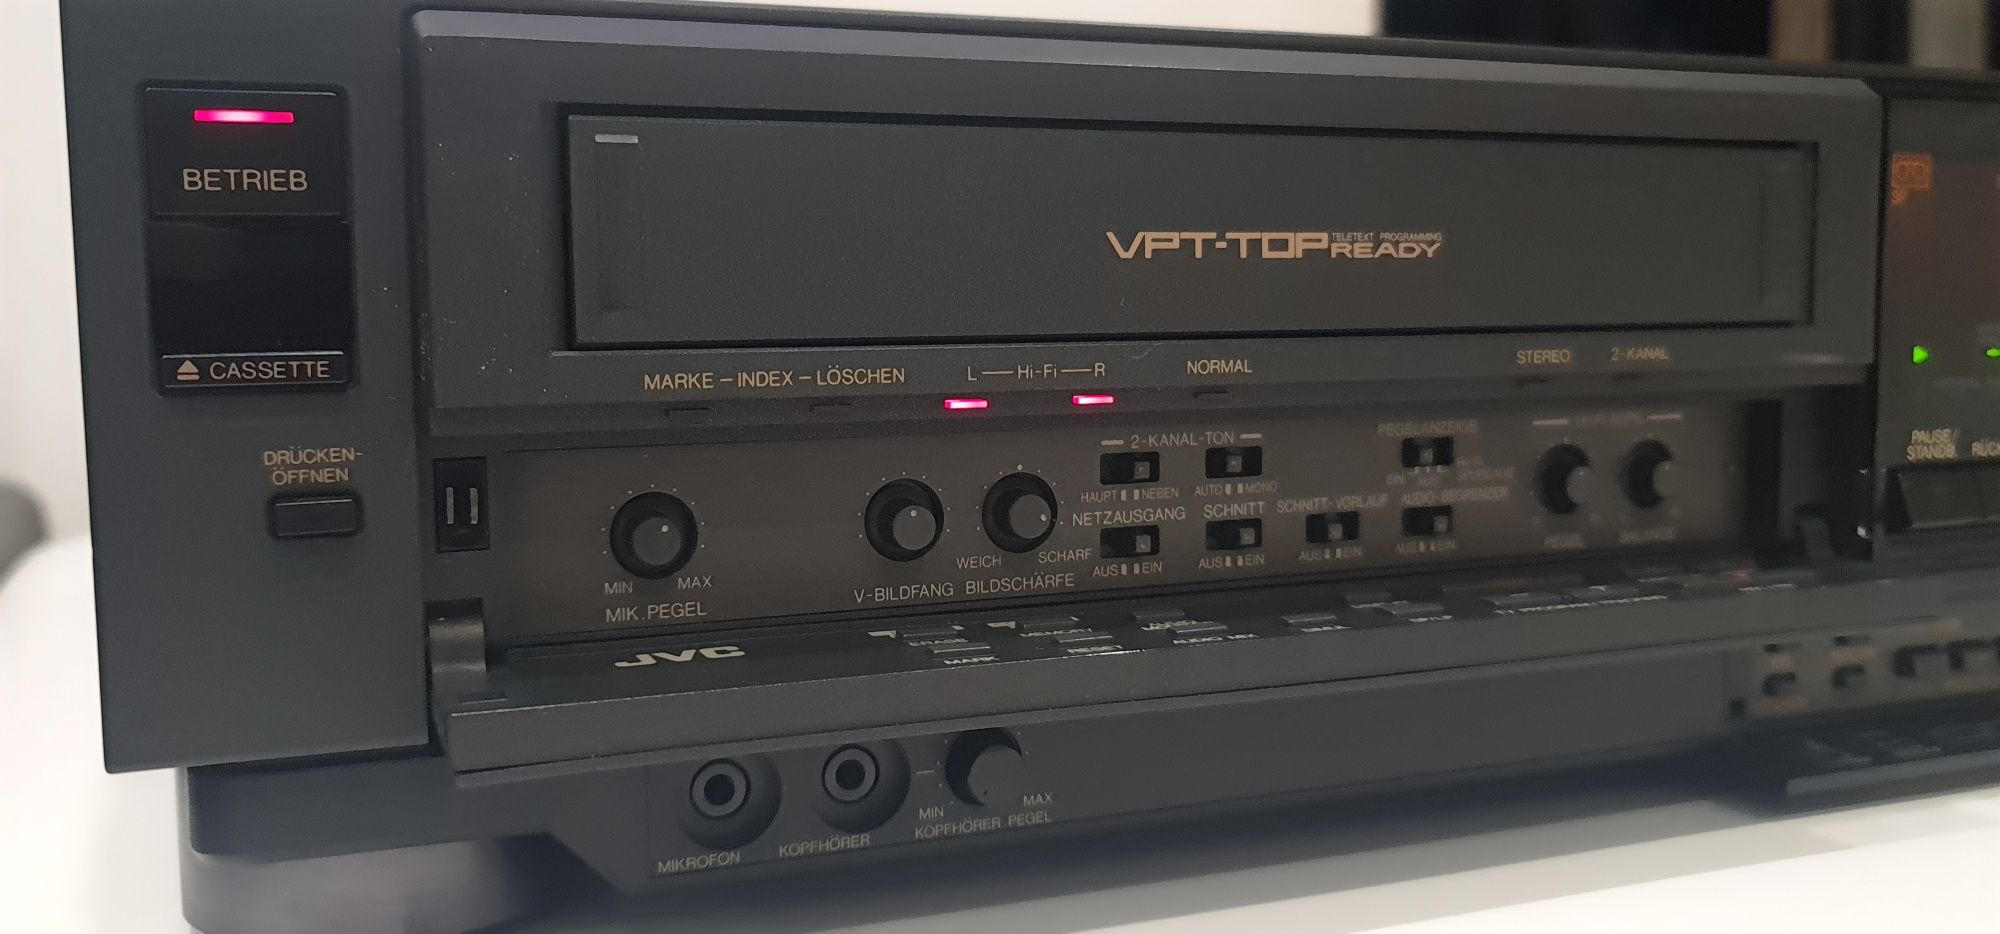 JVC HR-D950EG videorecorder VHS vârf de gamă în stare perfectă